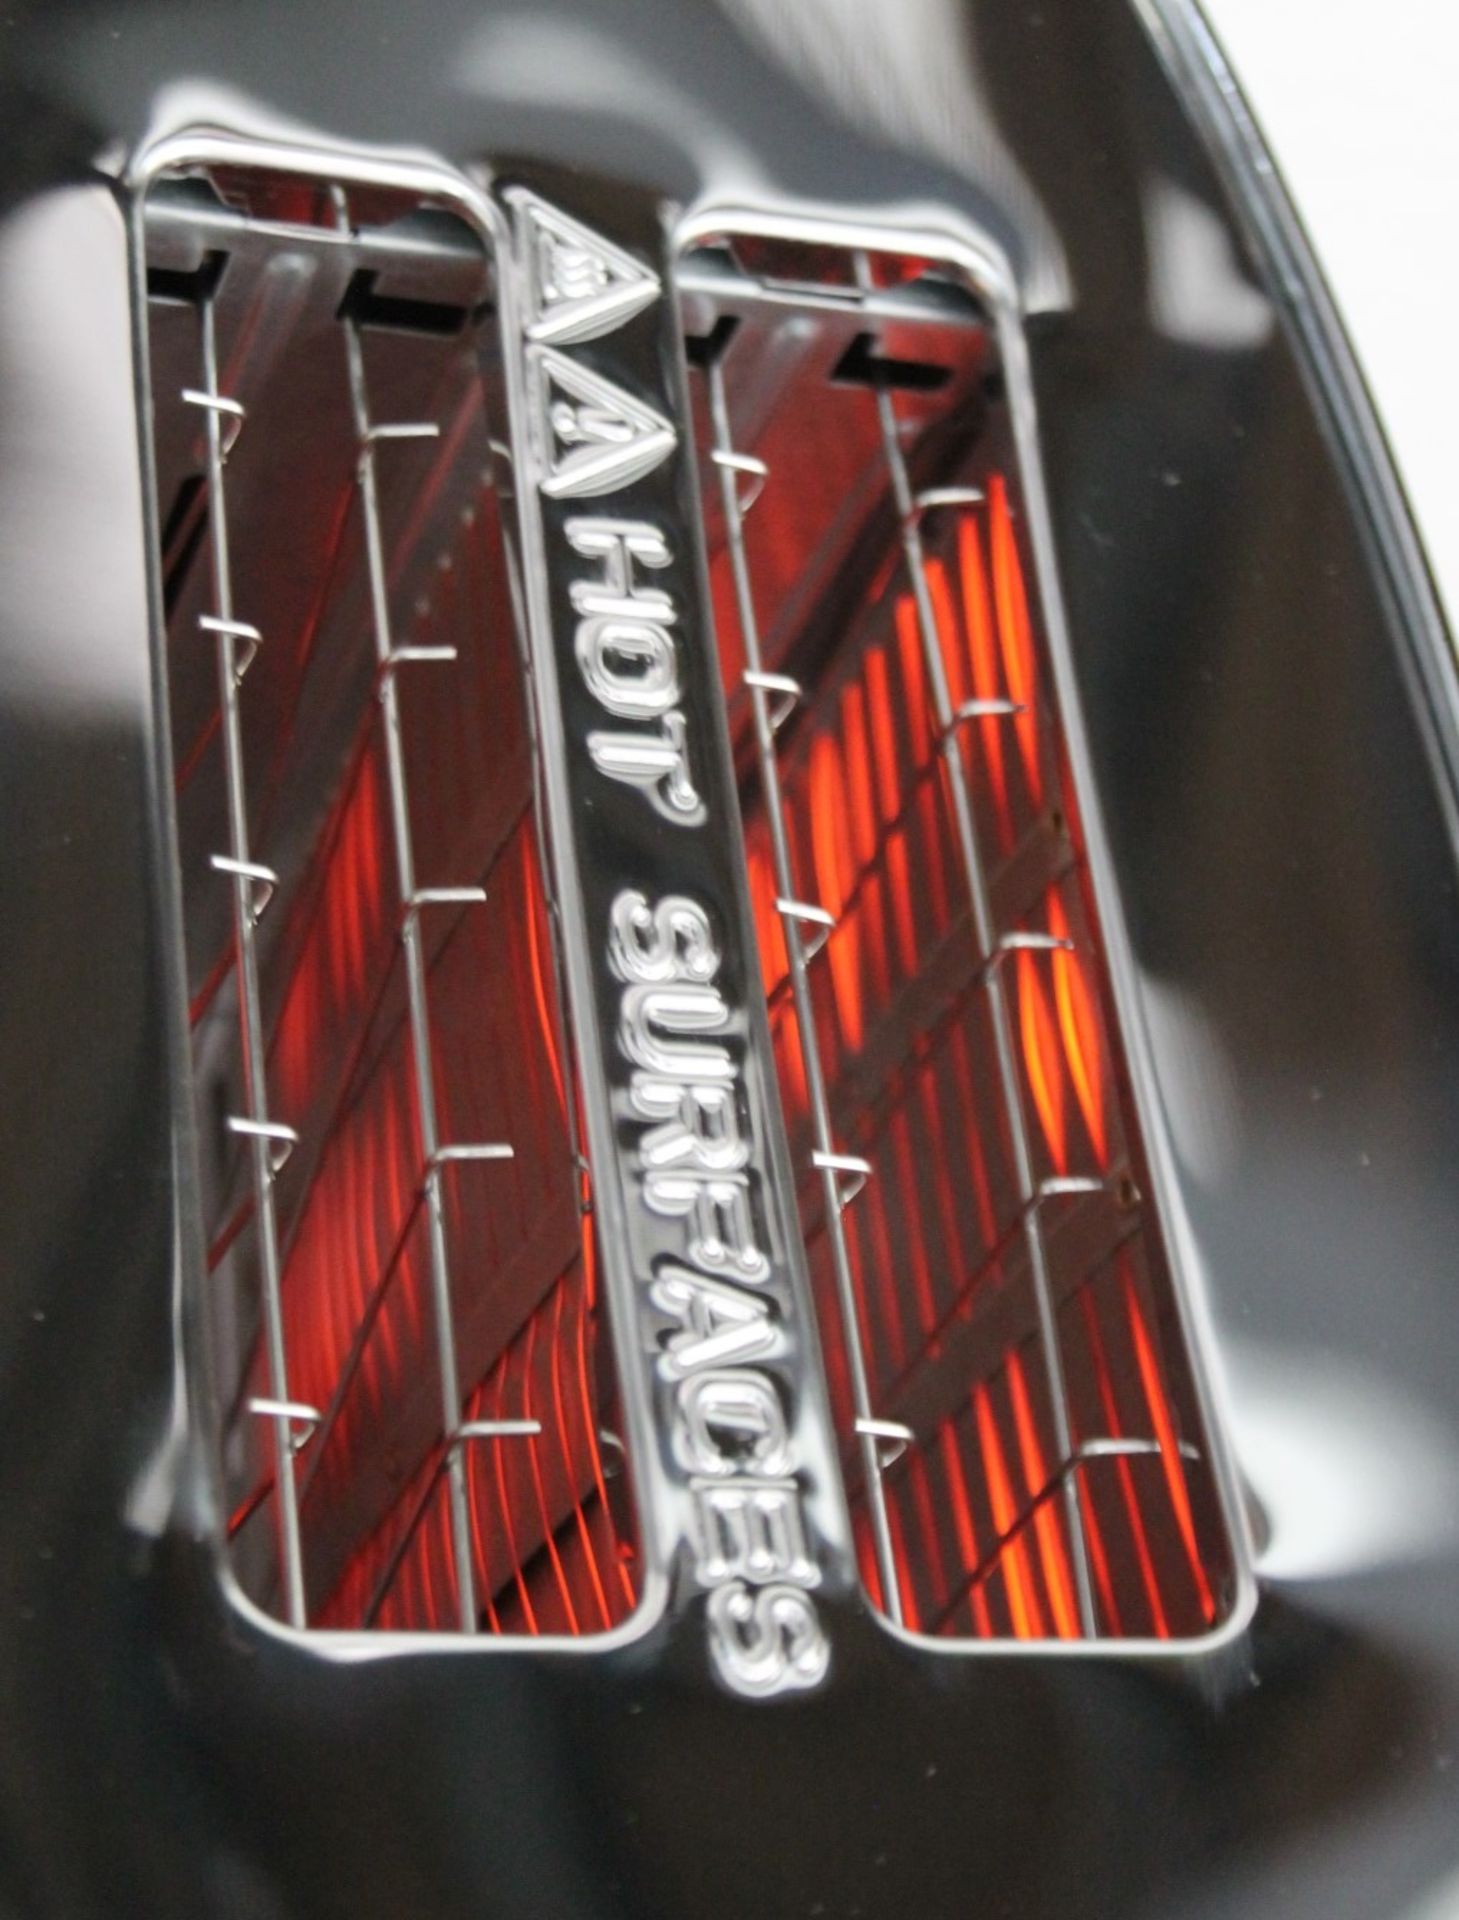 1 x Bugatti 'VOLO' Designer 2-Slice Self-Lowering Toaster In Chrome - Original Price £178.00 - Boxed - Image 5 of 13